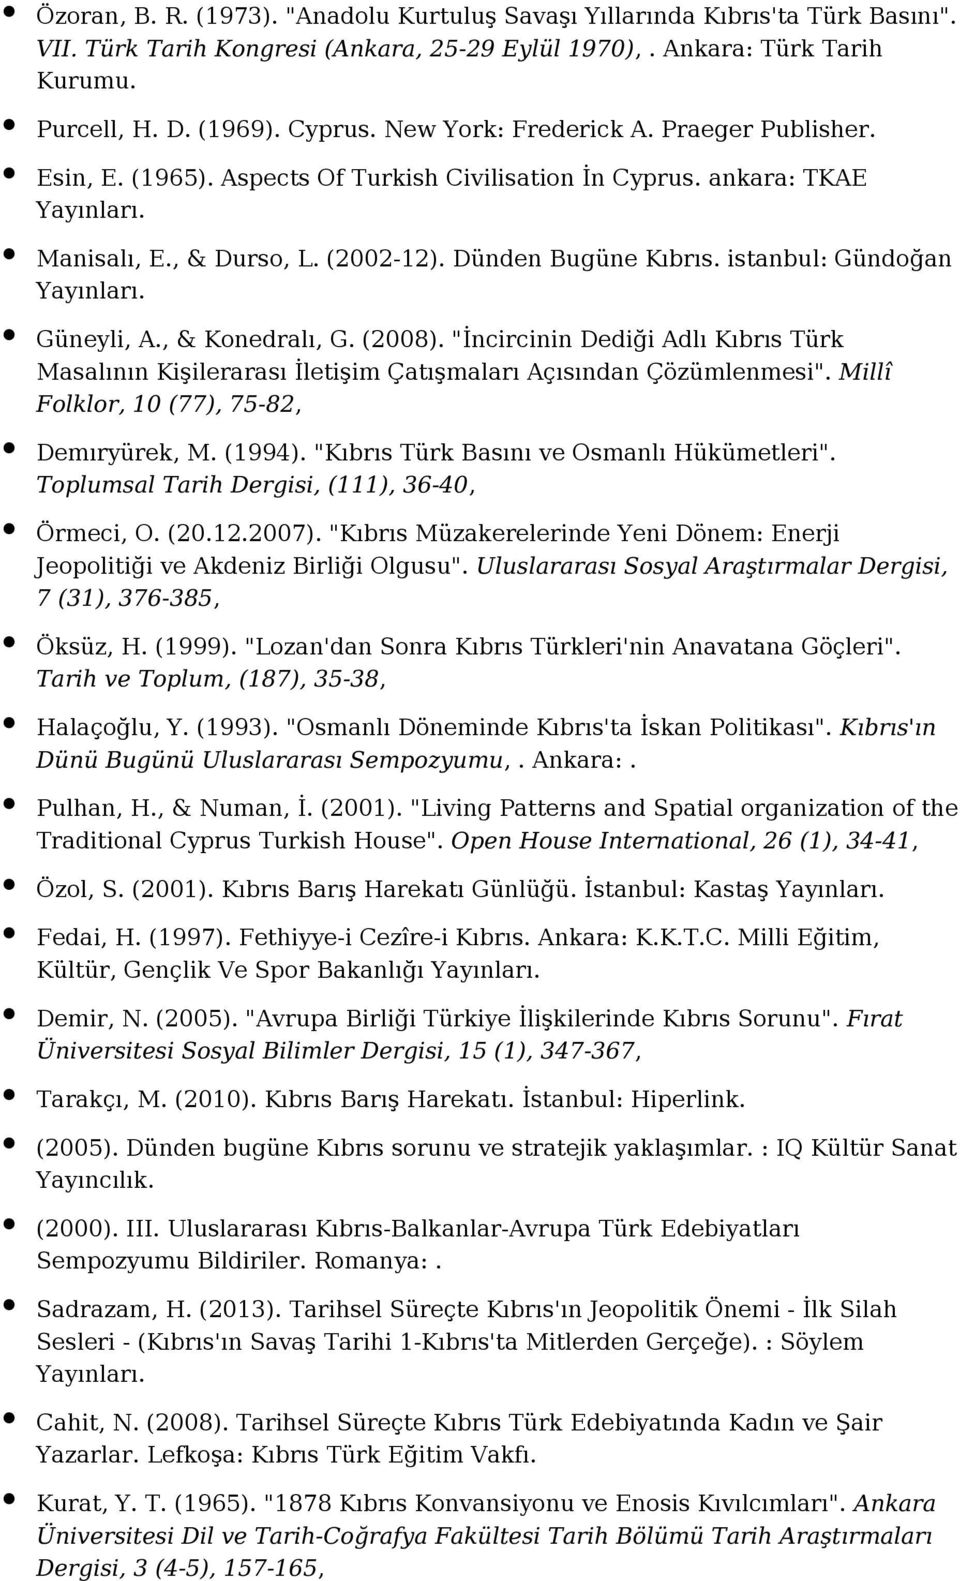 istanbul: Gündoğan Güneyli, A., & Konedralı, G. (2008). "İncircinin Dediği Adlı Kıbrıs Türk Masalının Kişilerarası İletişim Çatışmaları Açısından Çözümlenmesi".